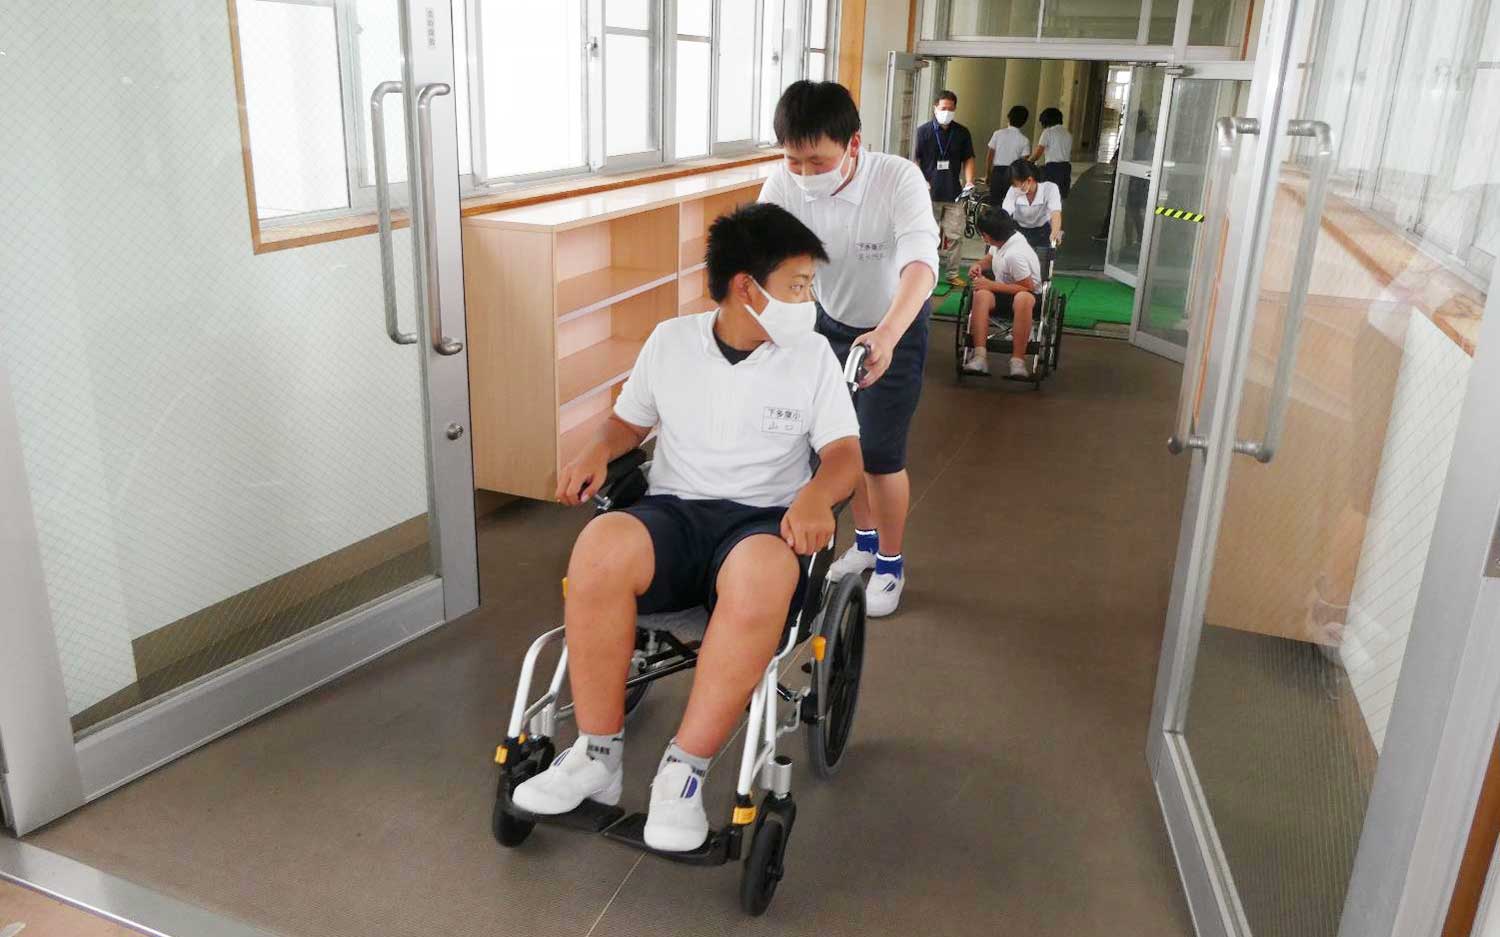 車椅子体験を行う学生たちの様子